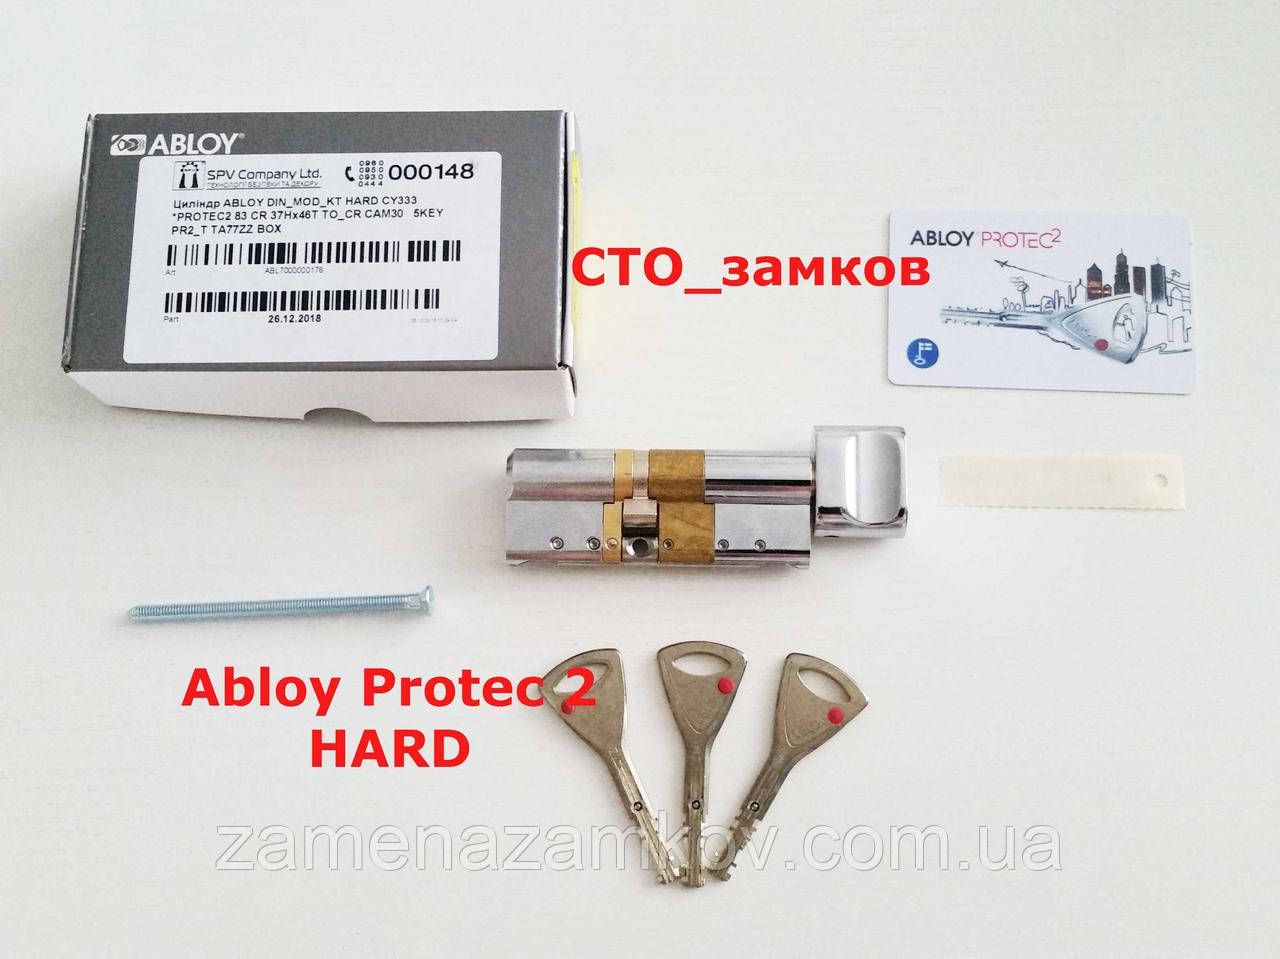 Abloy Protec2 HARD 73 мм 32Hx41 ключ/тумблер циліндровий механізм хром